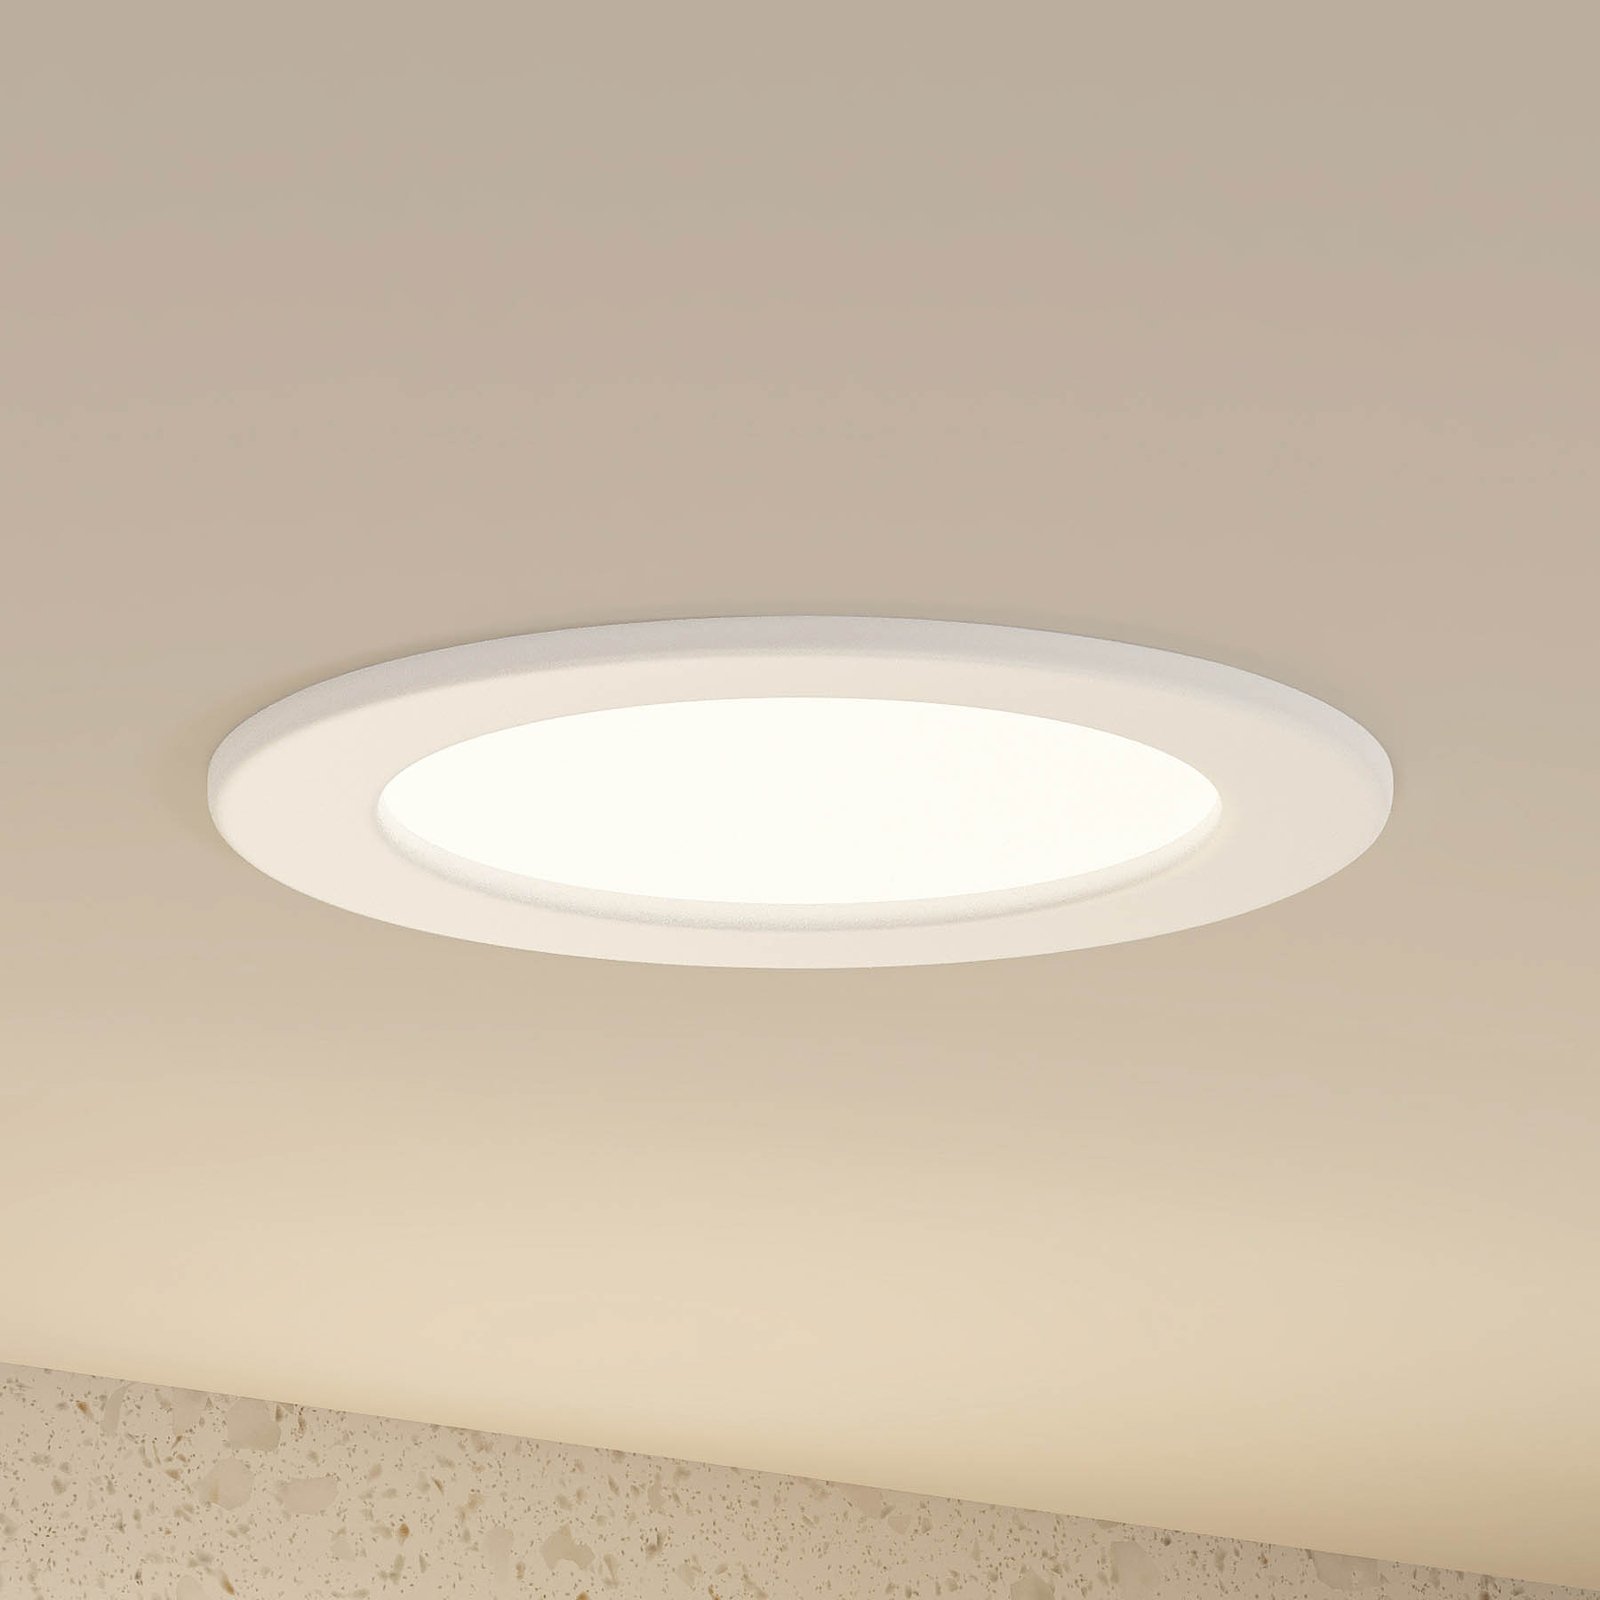 Prios Cadance spot LED da incasso, bianco, 17 cm